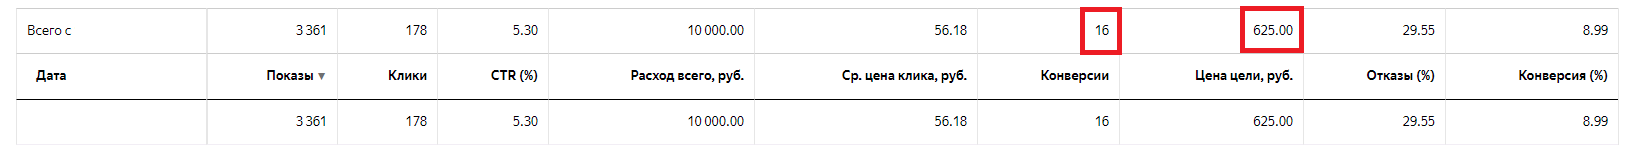 Кейс «Аутсорсинг персонала» — 14,1 млн. руб. за 9 мес. с помощью Яндекс.Директ/Google Ads